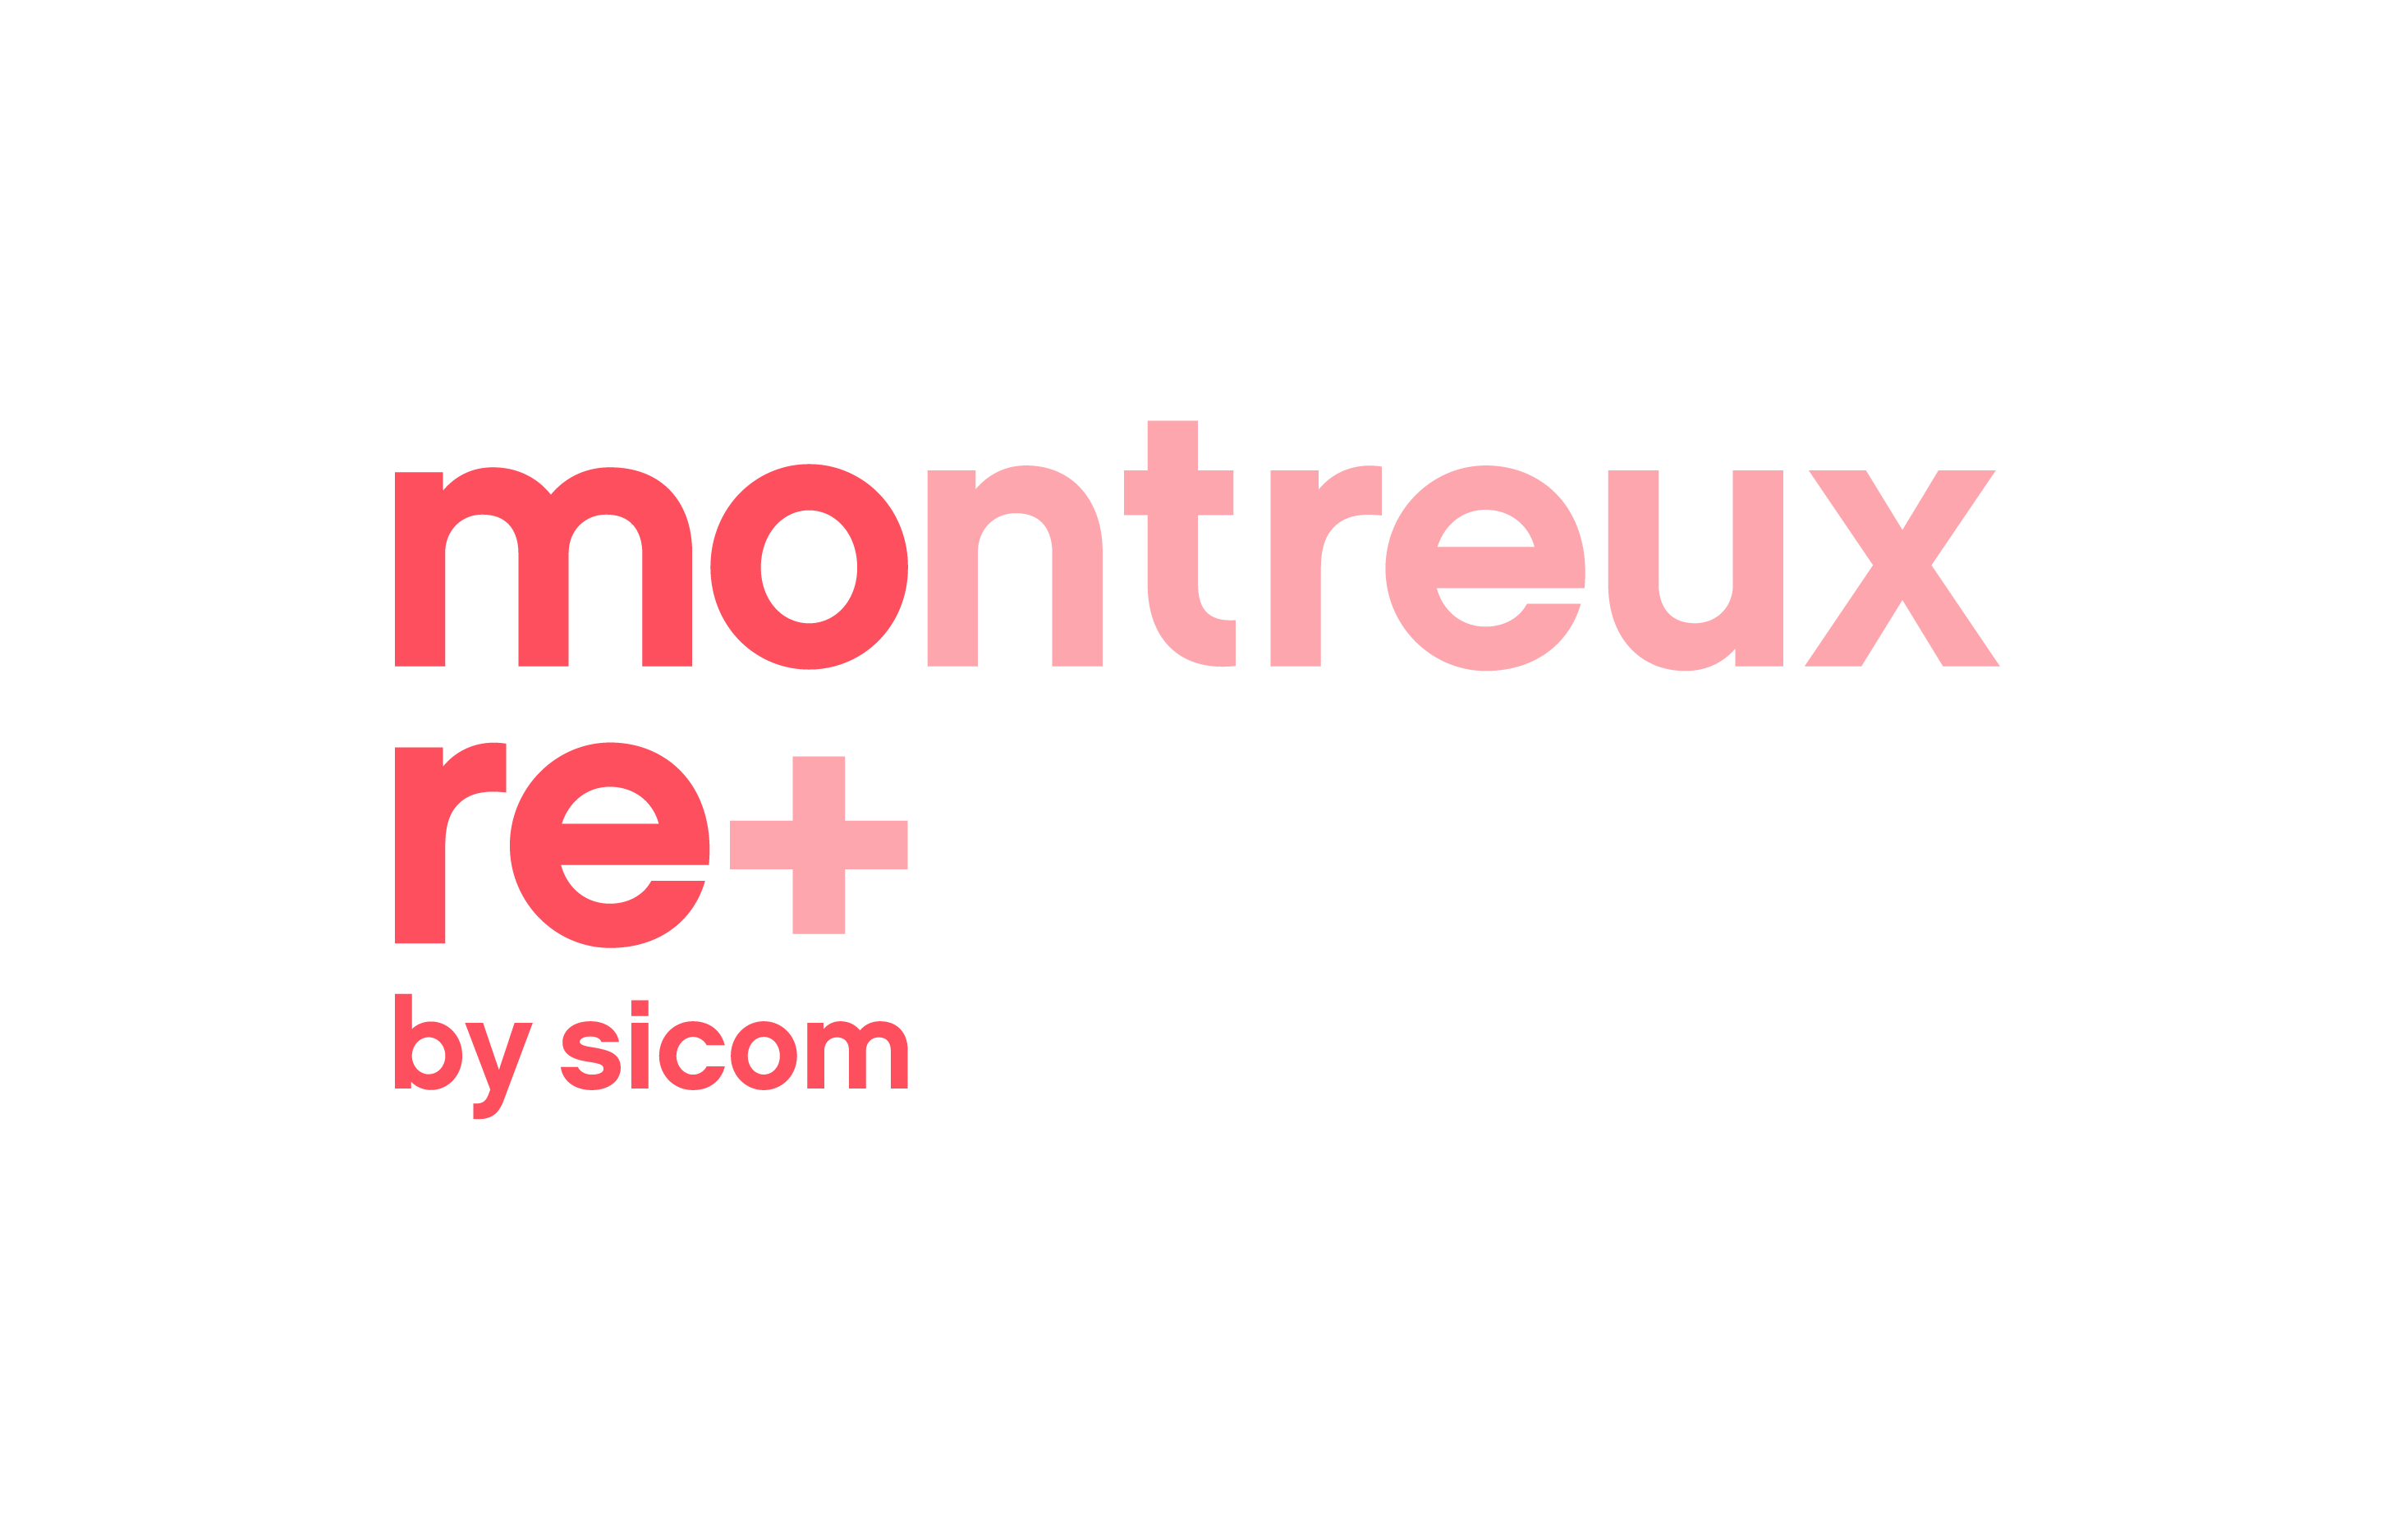 Montreux Re+